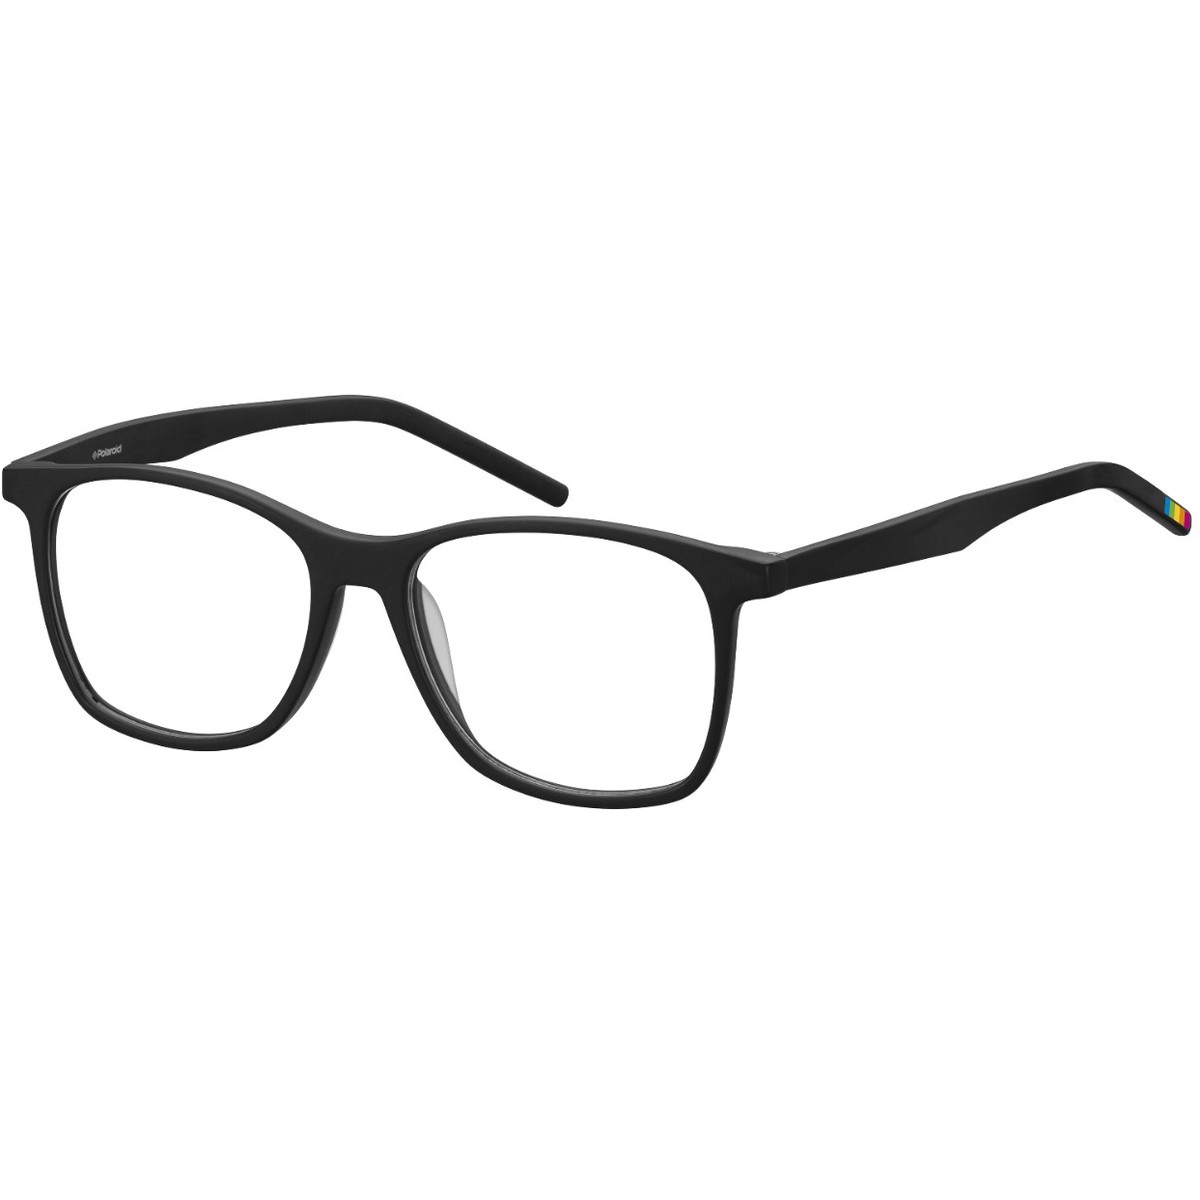 Rame ochelari de vedere unisex POLAROID PLD D301 QHC 54 Rectangulare Negre originale din Plastic cu comanda online